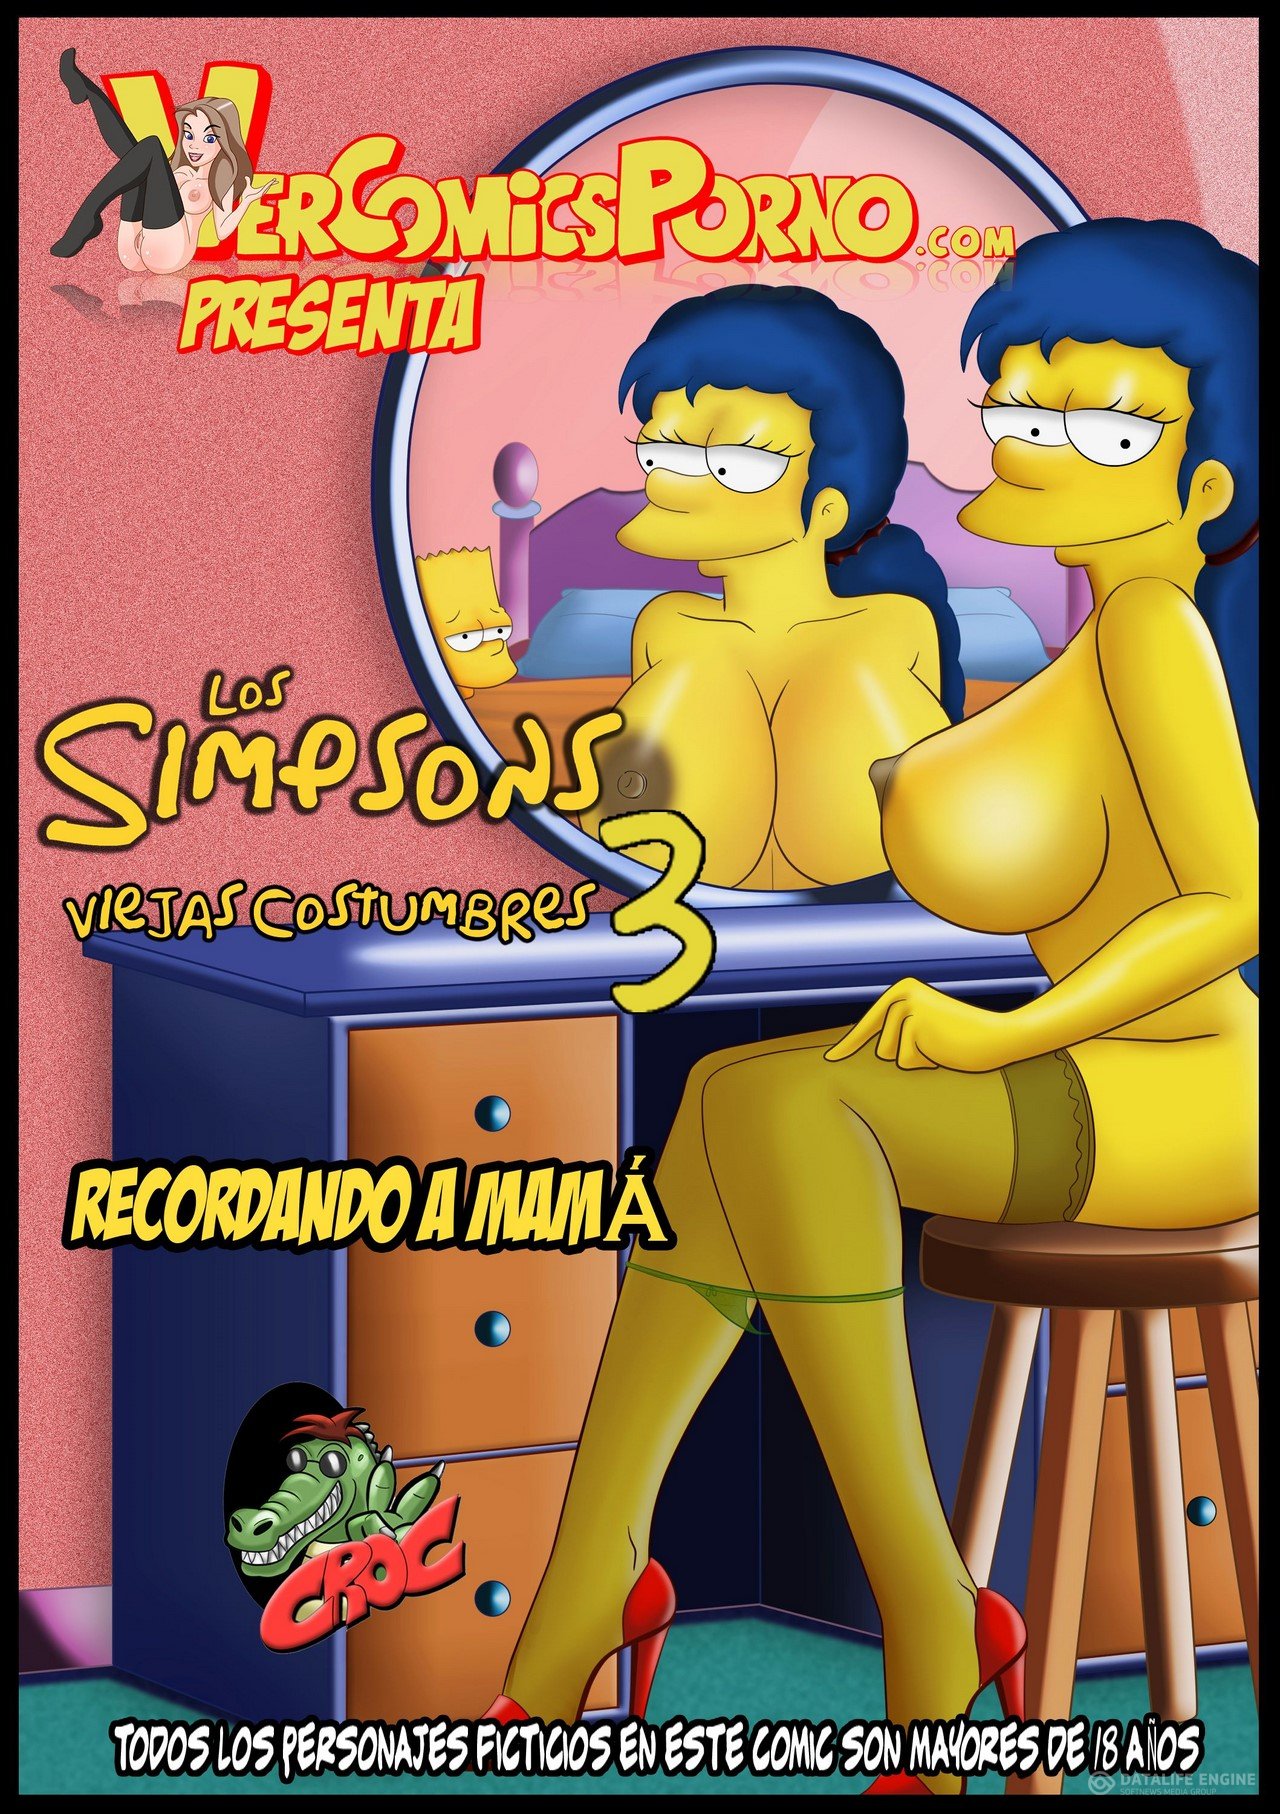 SureFap xxx porno The Simpsons - Los Simpsons Viejas Costumbres.3 "Recordando a mama''  xxx porno